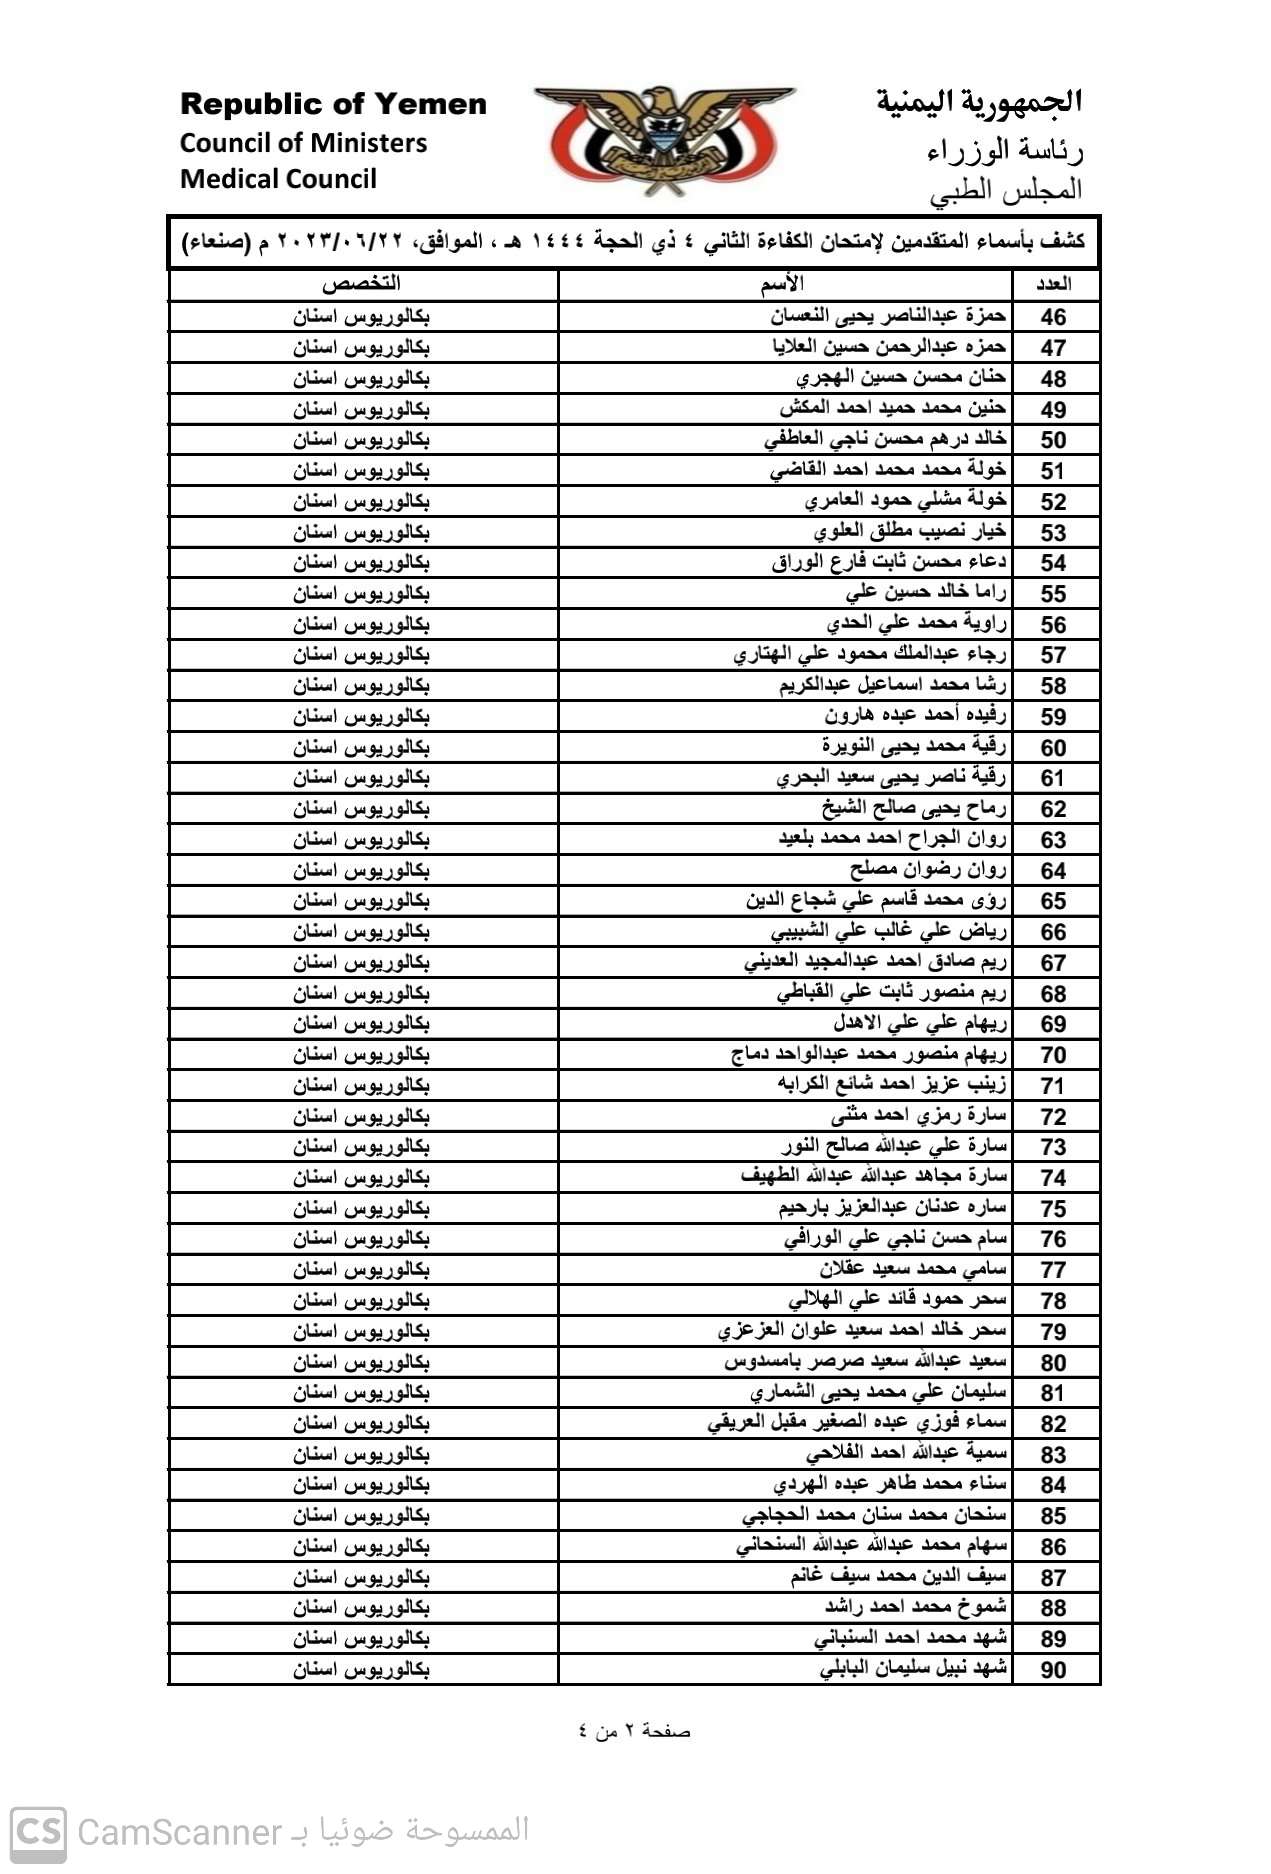 كشف باسماء المتقدمين لامتحان الكفاء الثاني 2023 بامانة العاصمة صنعاء للحصول على تراخيص مزاولة المهنة تخصص (بكالوريوس اسنان)